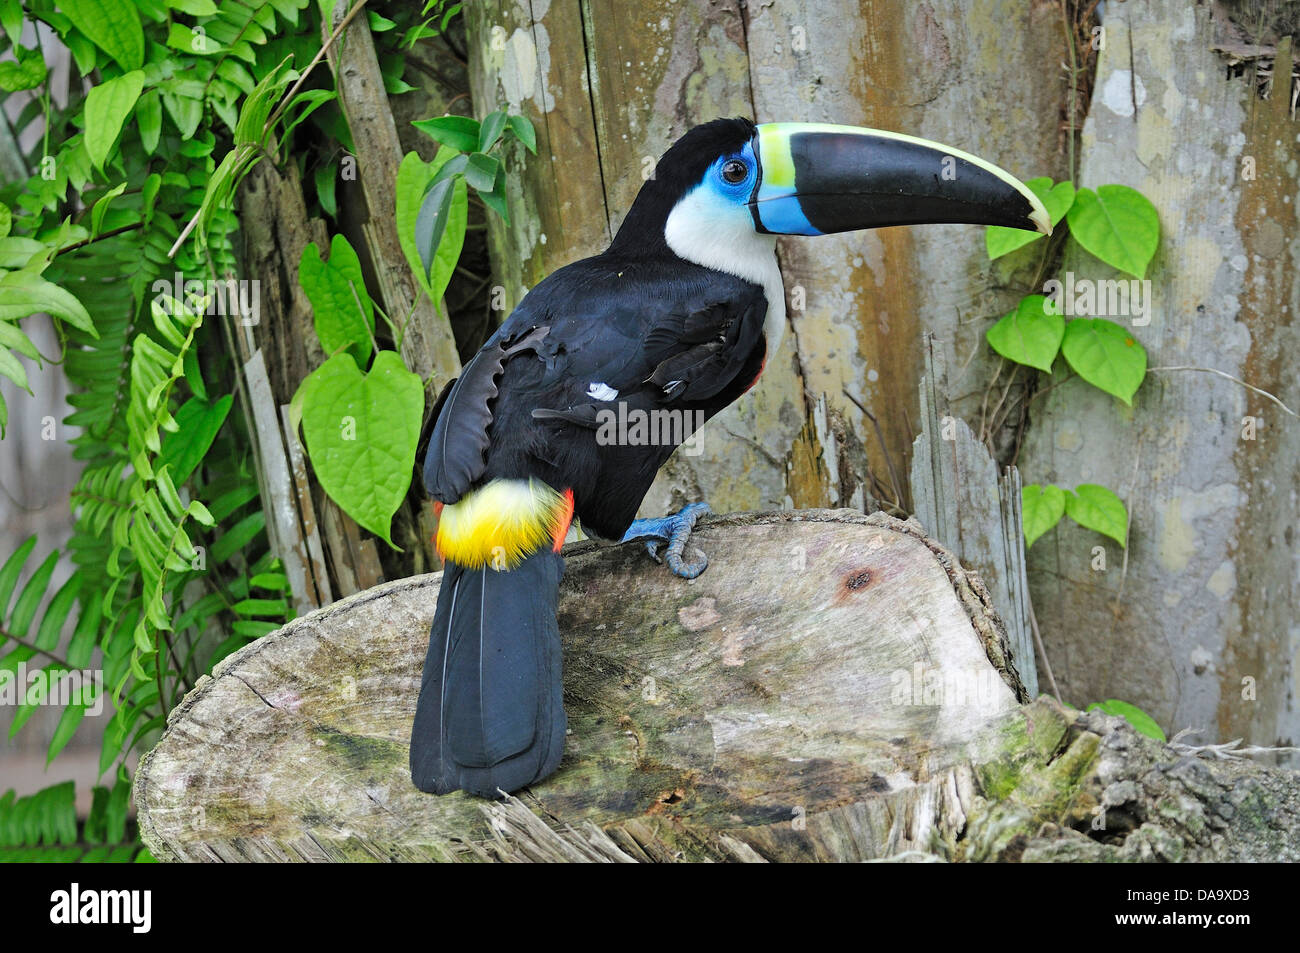 Sud America, Perù, Amazon, Ramphastos vitellinus, Toucan, Tucano, bird, becco, colorati Foto Stock